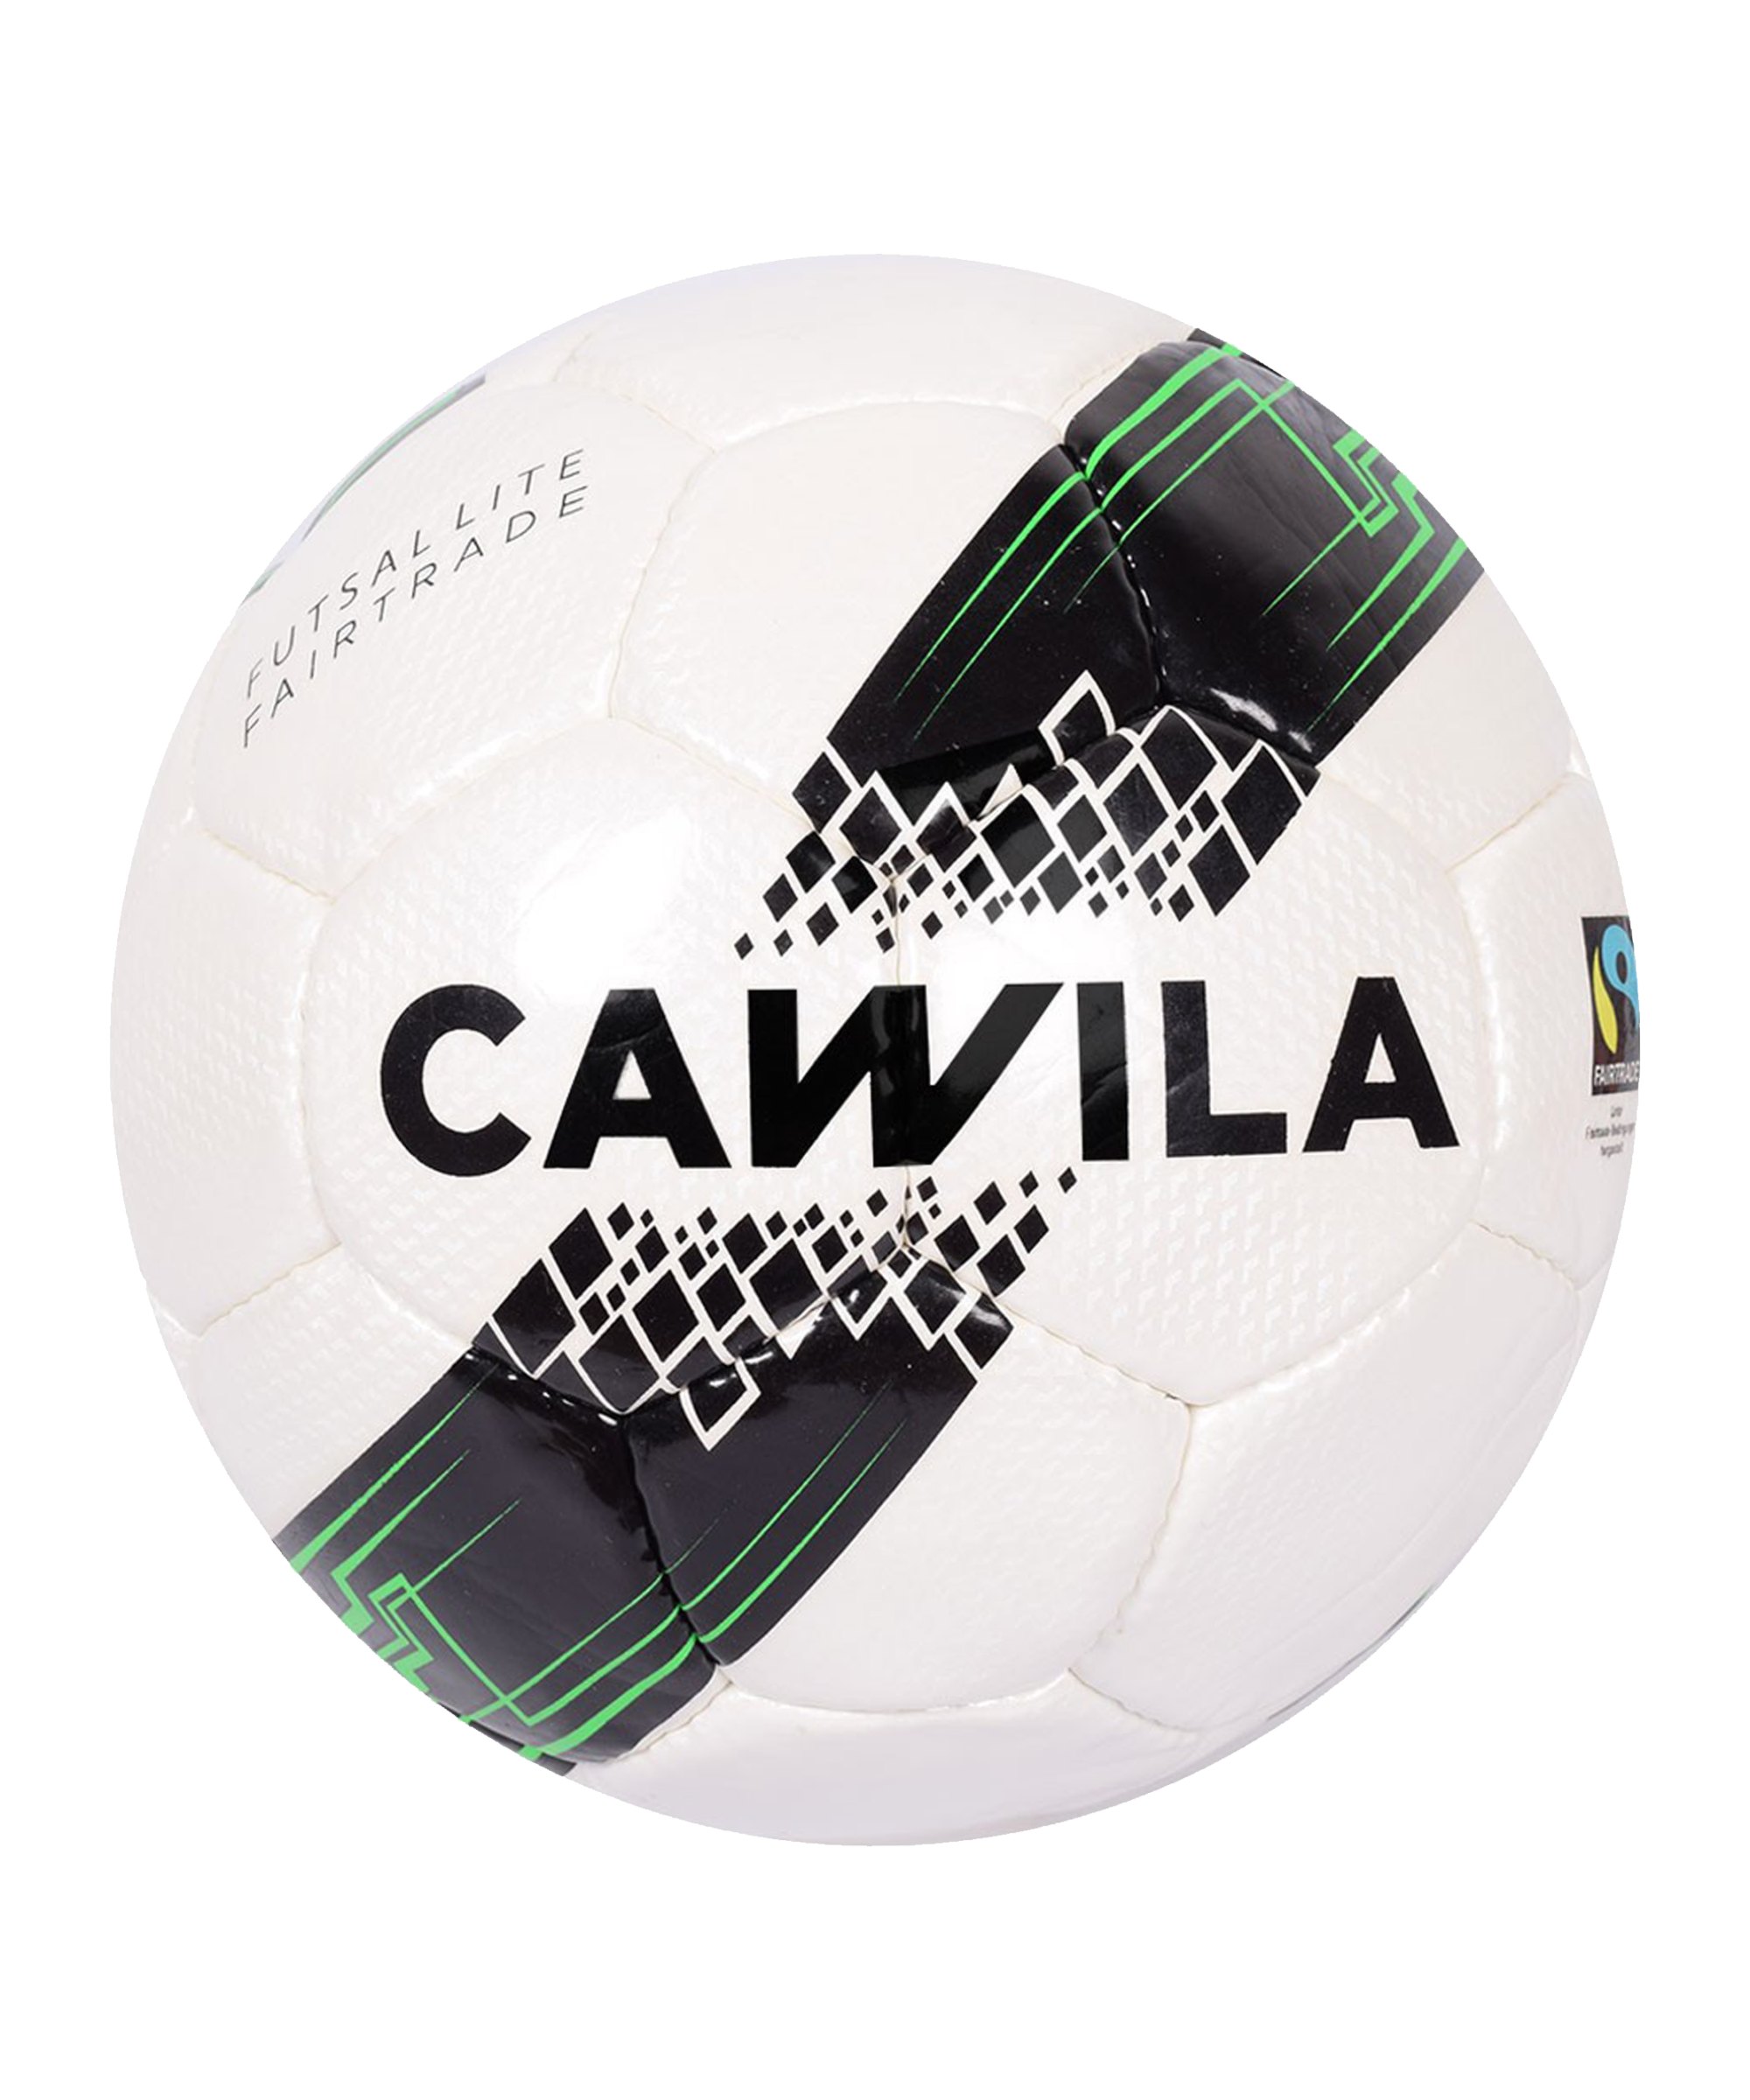 Cawila LITE Futsal Fairtrade Trainingsball 350g Gr. 4 - weiss